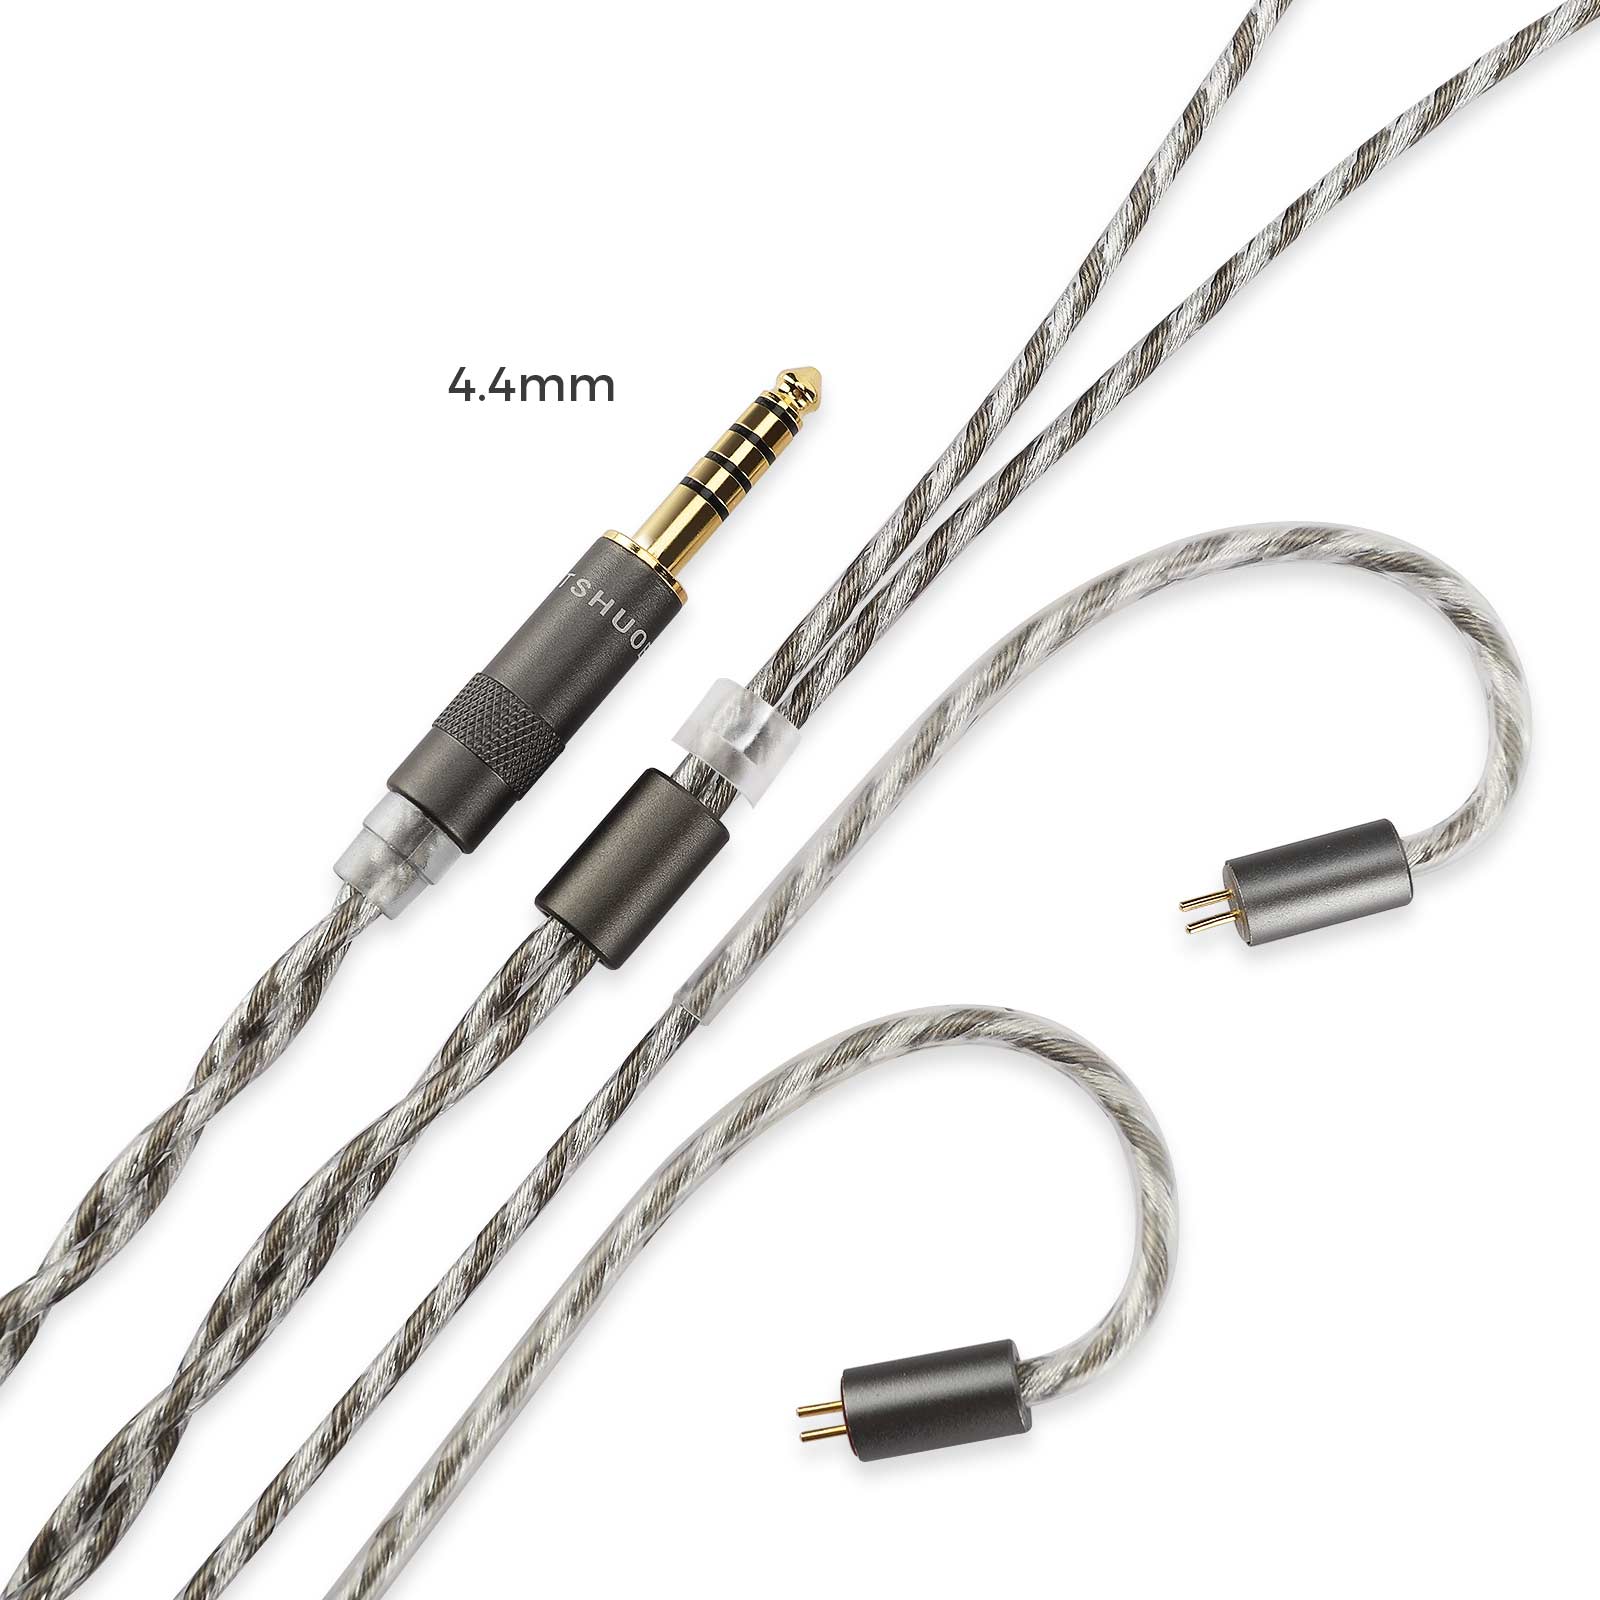 LETSHUOER S12 Audio 3.5mm Kabel oder 4.4mm symmetrische Kopfhörerkabel mit 2-poligem Stecker 128 Litzen versilbertes Kupferkabel